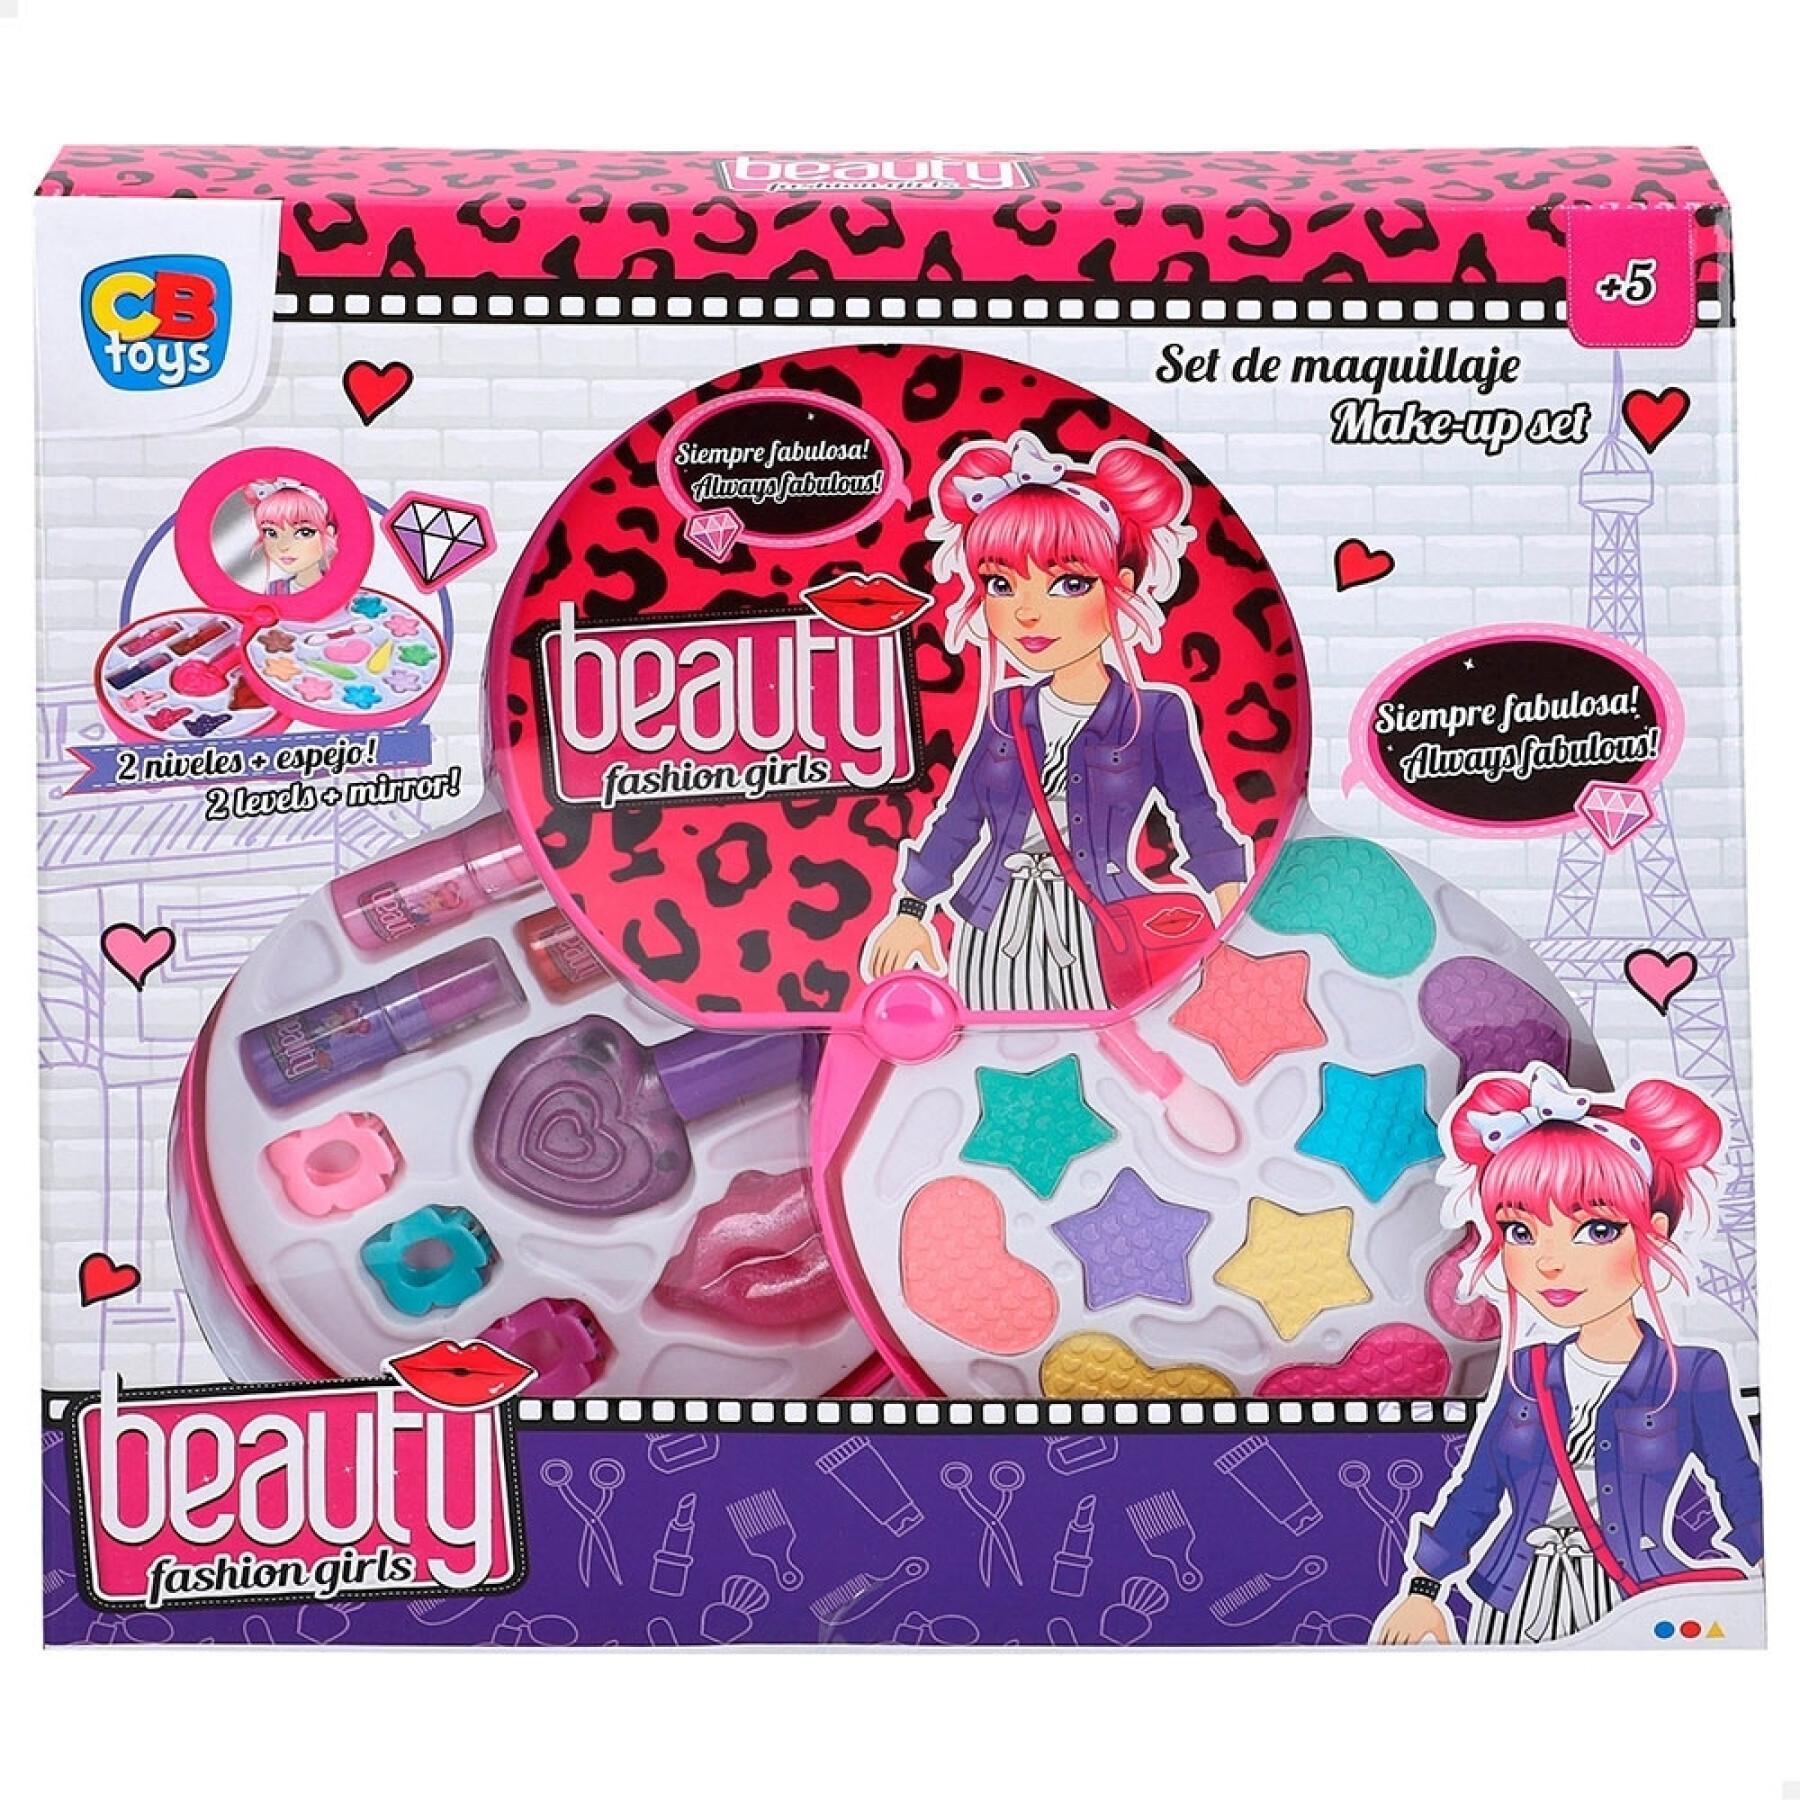 Make-up box 2 floors CB Toys Beauty Blister